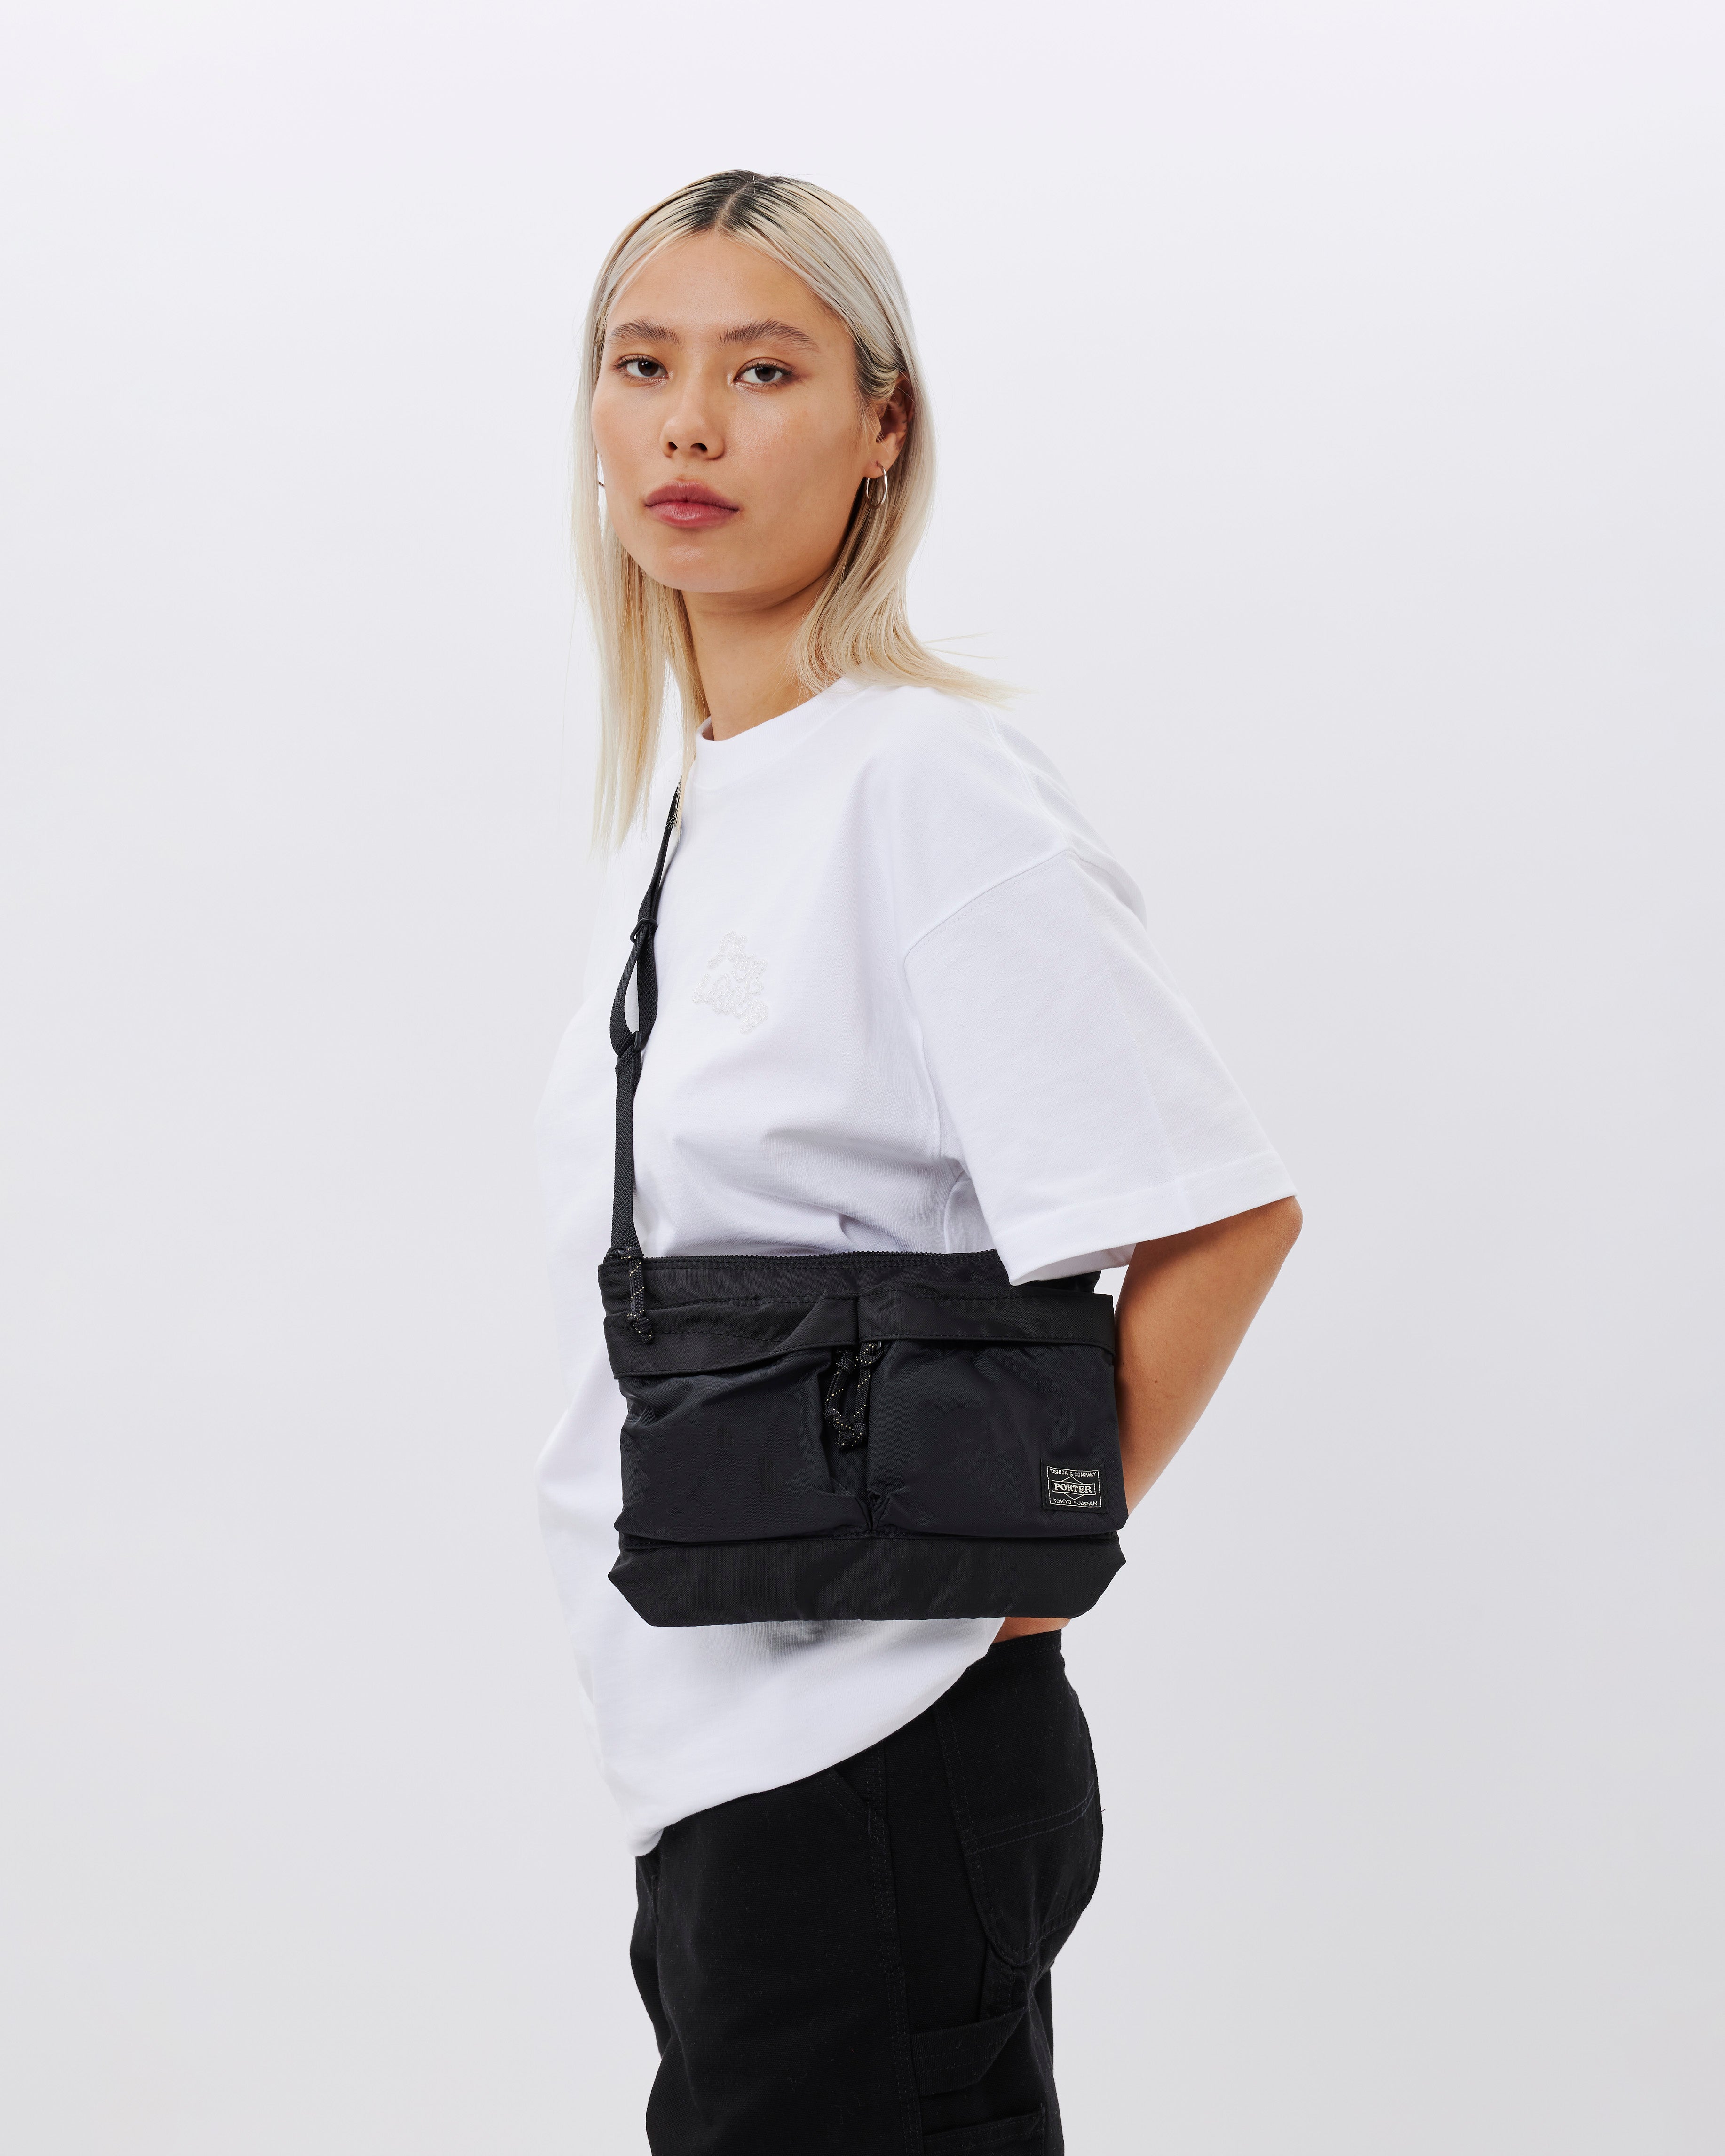 PORTER - Yoshida & Co Force Shoulder Bag BLACK 855-05458-10